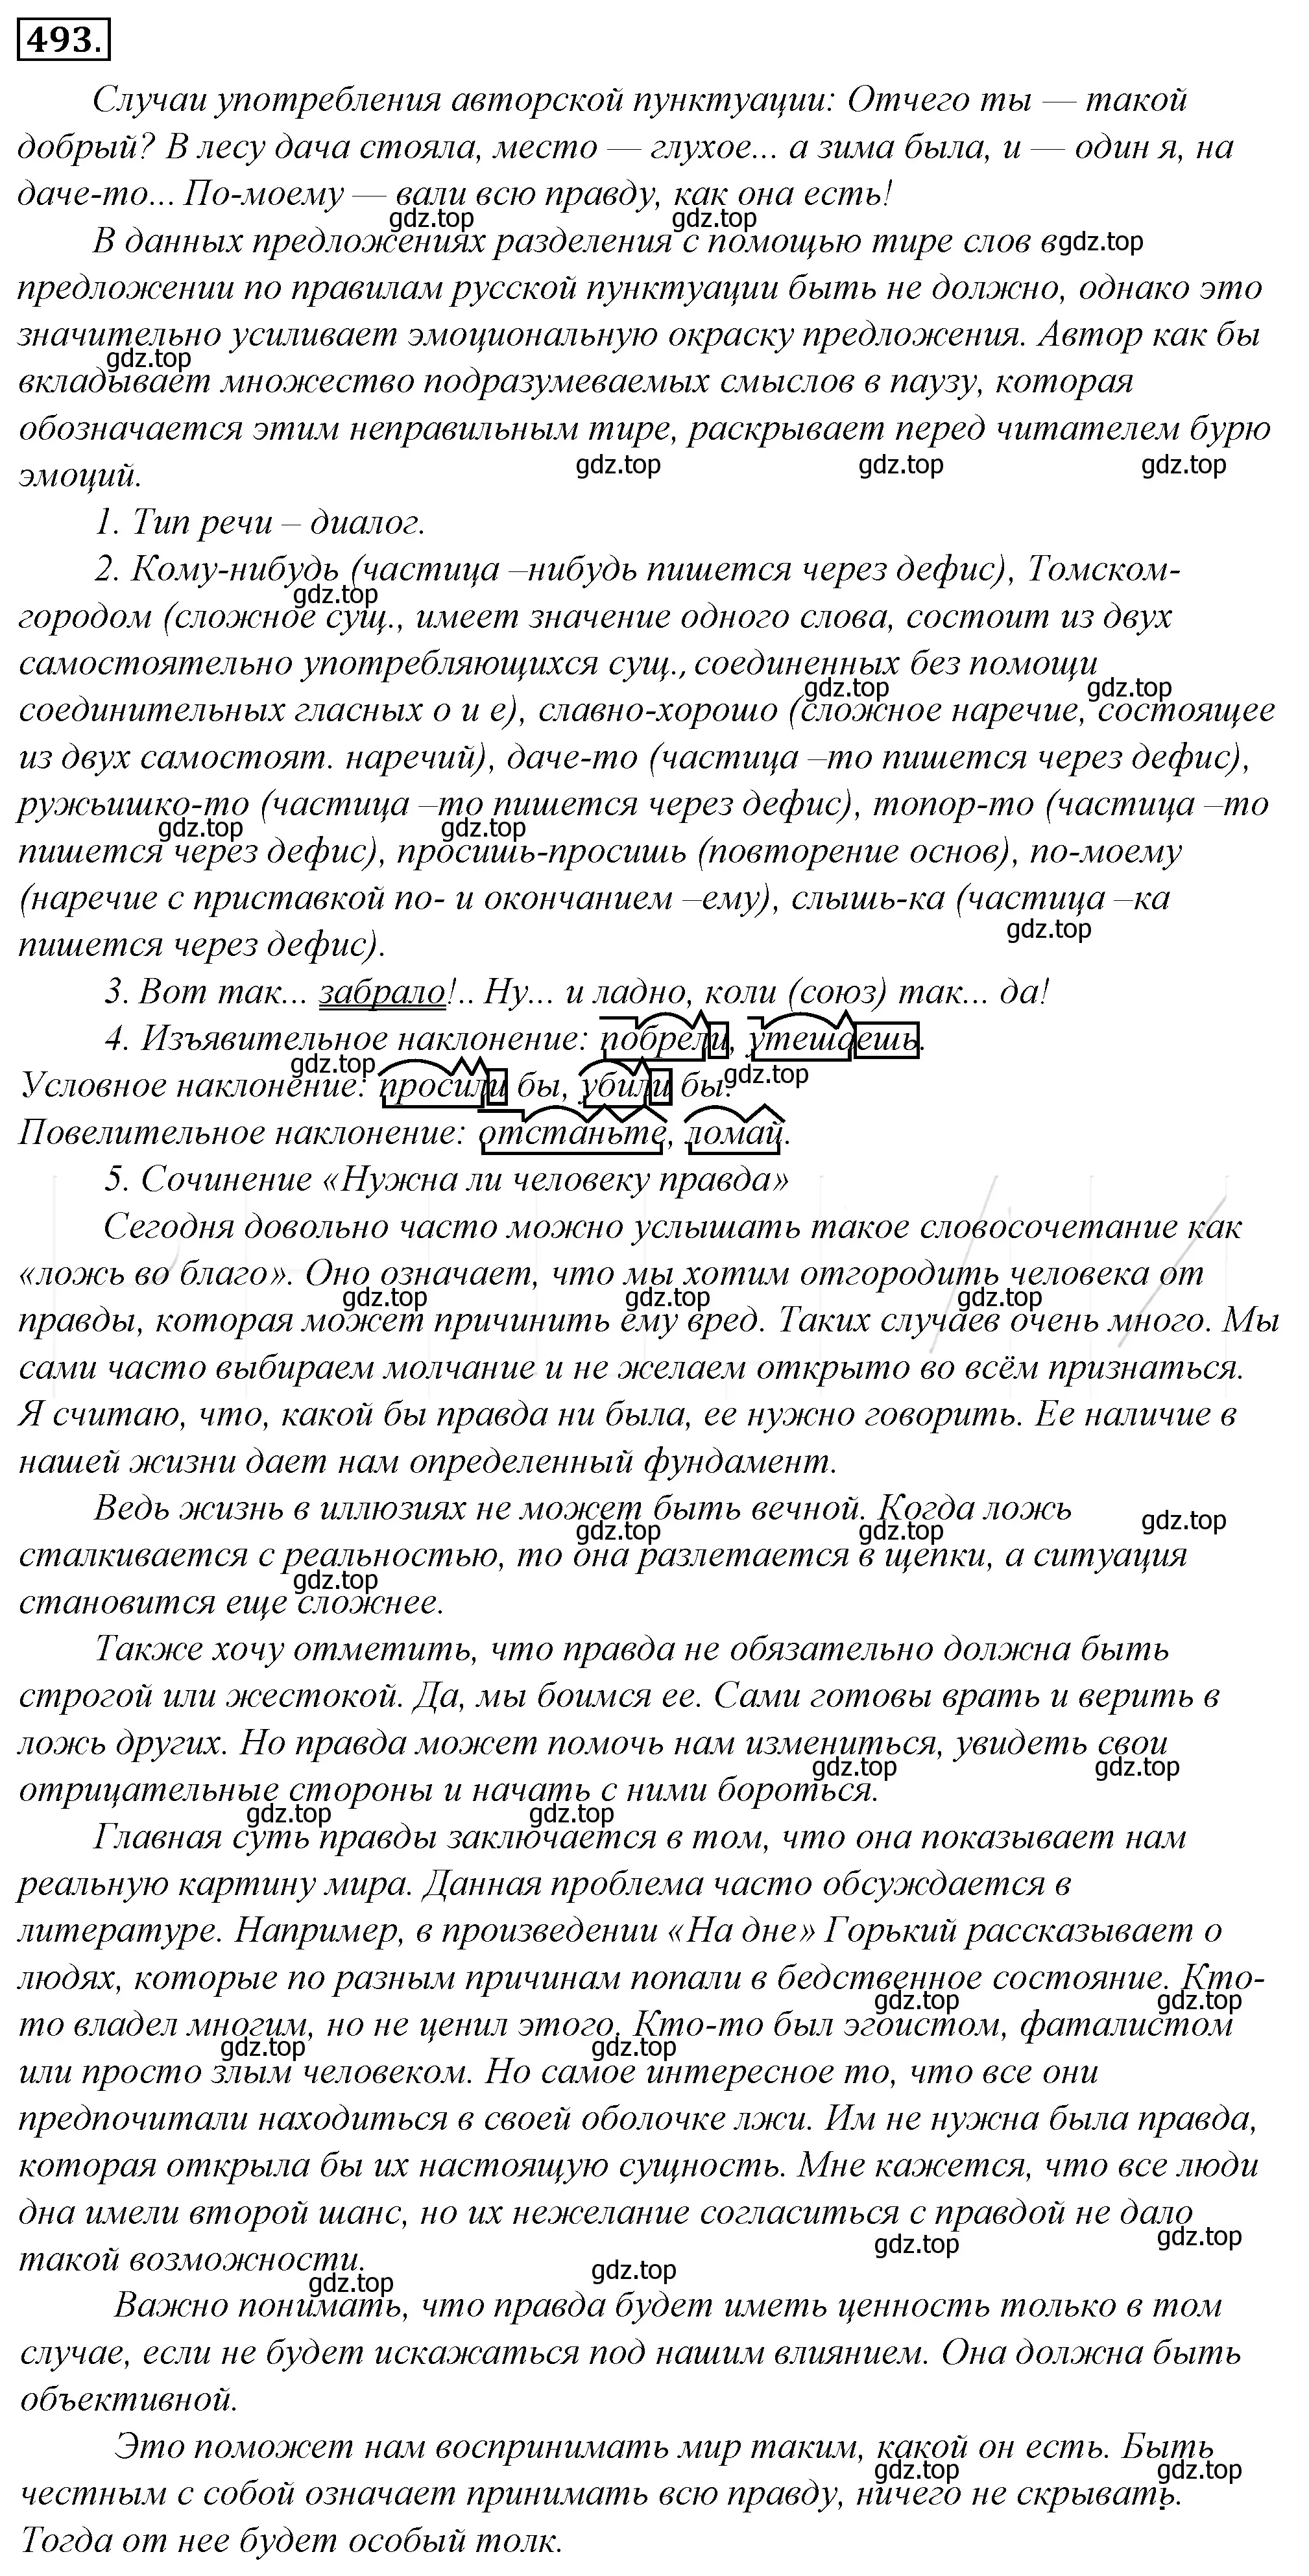 Решение 4. номер 158 (страница 222) гдз по русскому языку 10-11 класс Гольцова, Шамшин, учебник 2 часть